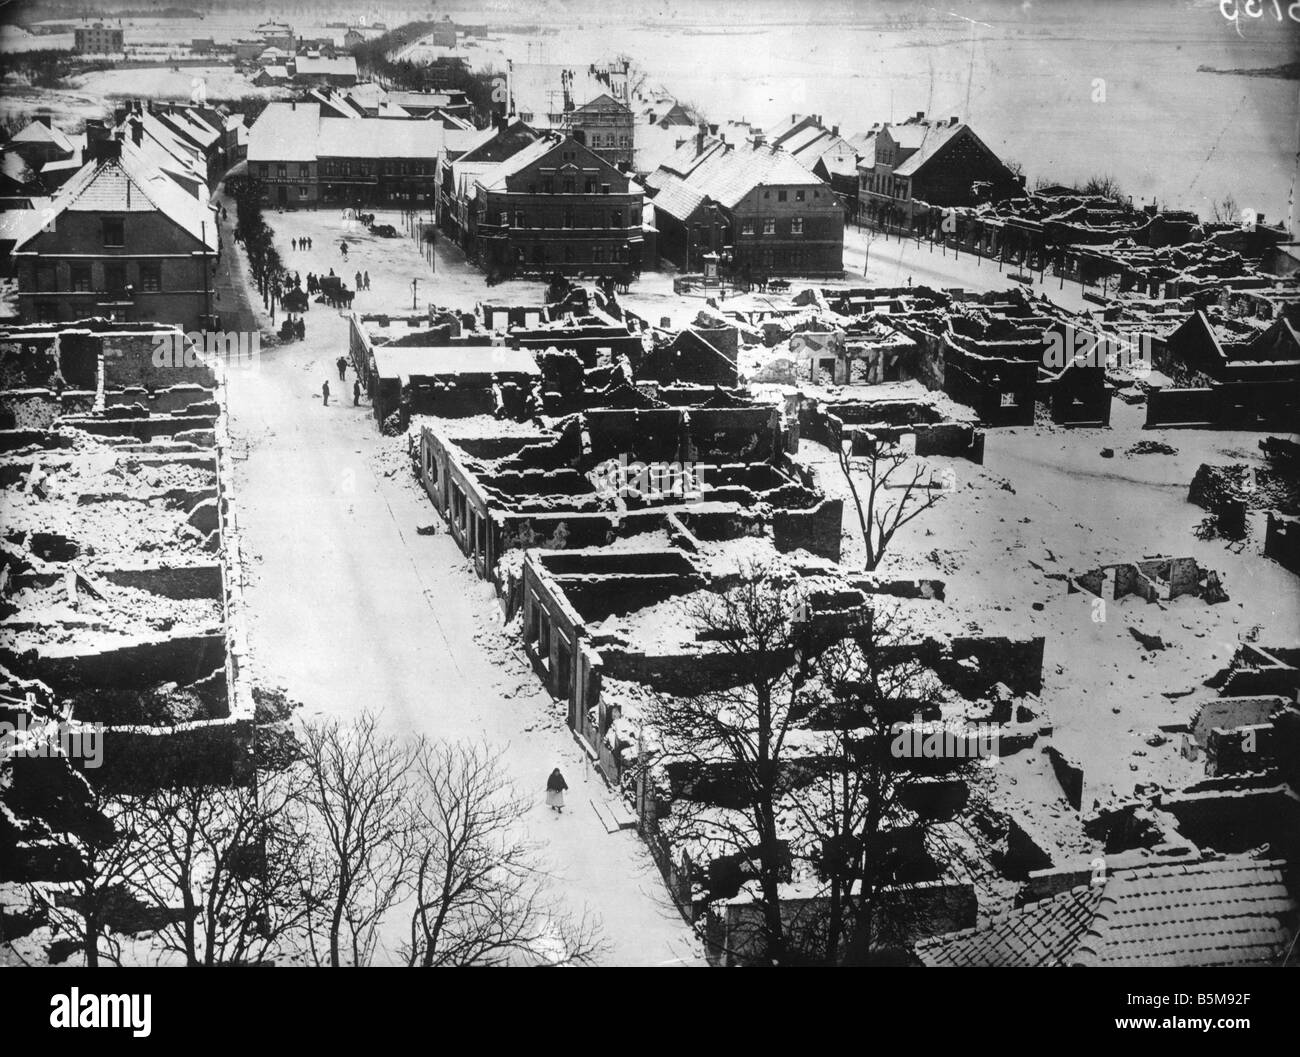 2 G55 O1 1914 14 WWI distruzione in Gerdauen Foto Storia della prima guerra mondiale sul fronte orientale vista di Gerdauen Prussia orientale dopo la sua distruzione Foto Stock